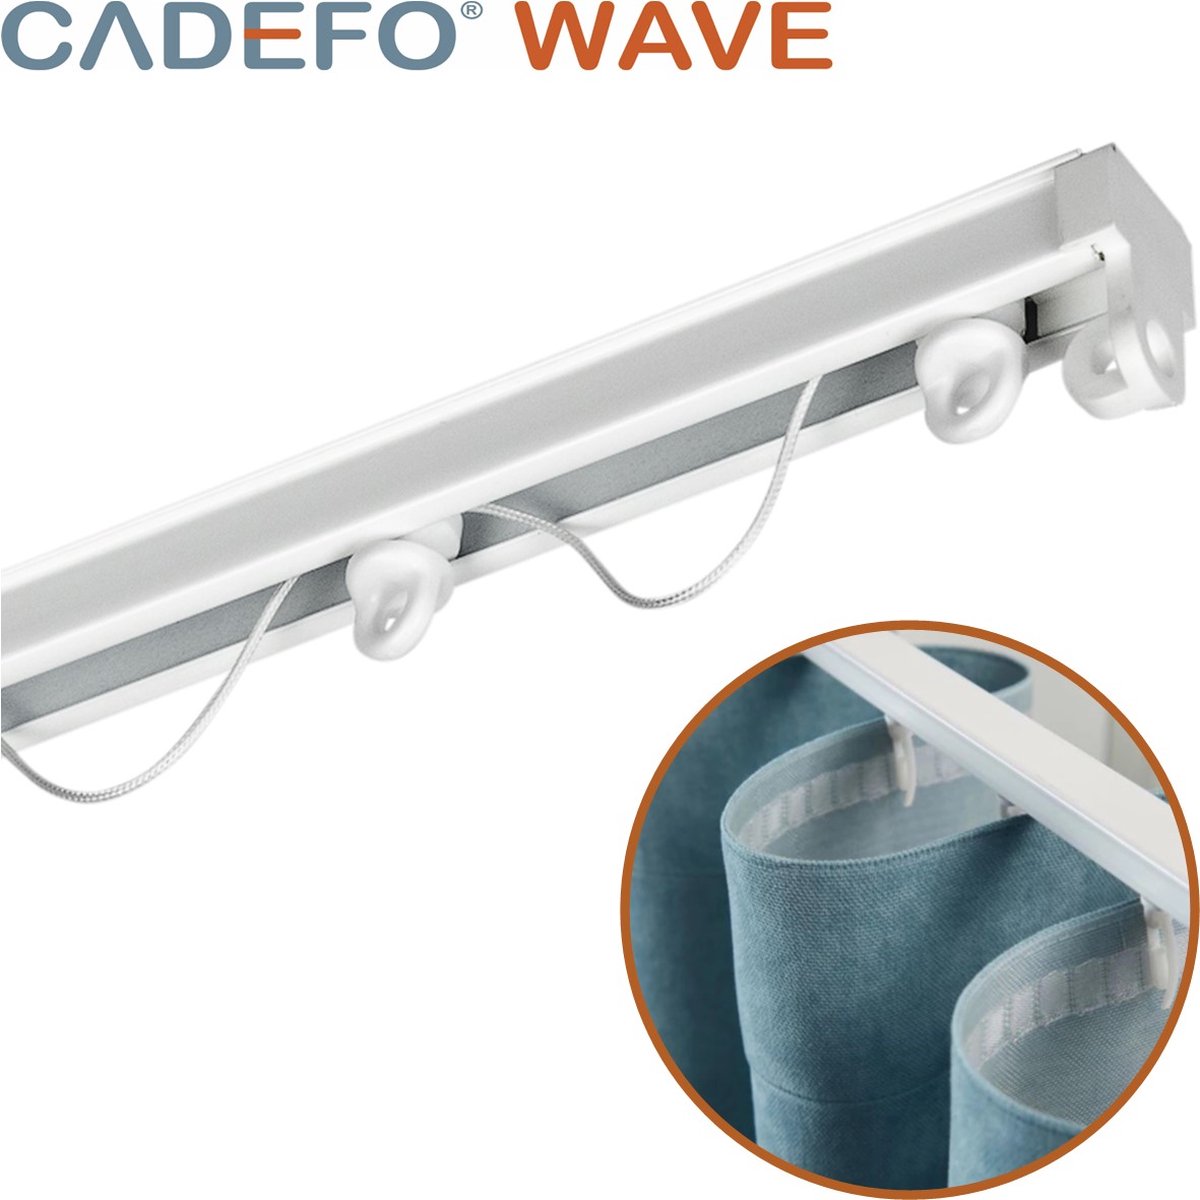 CADEFO WAVE (401 - 450 cm) Gordijnrails - Compleet op maat! - UIT 1 STUK - Leverbaar tot 6 meter - Plafondbevestiging - Lengte 444 cm